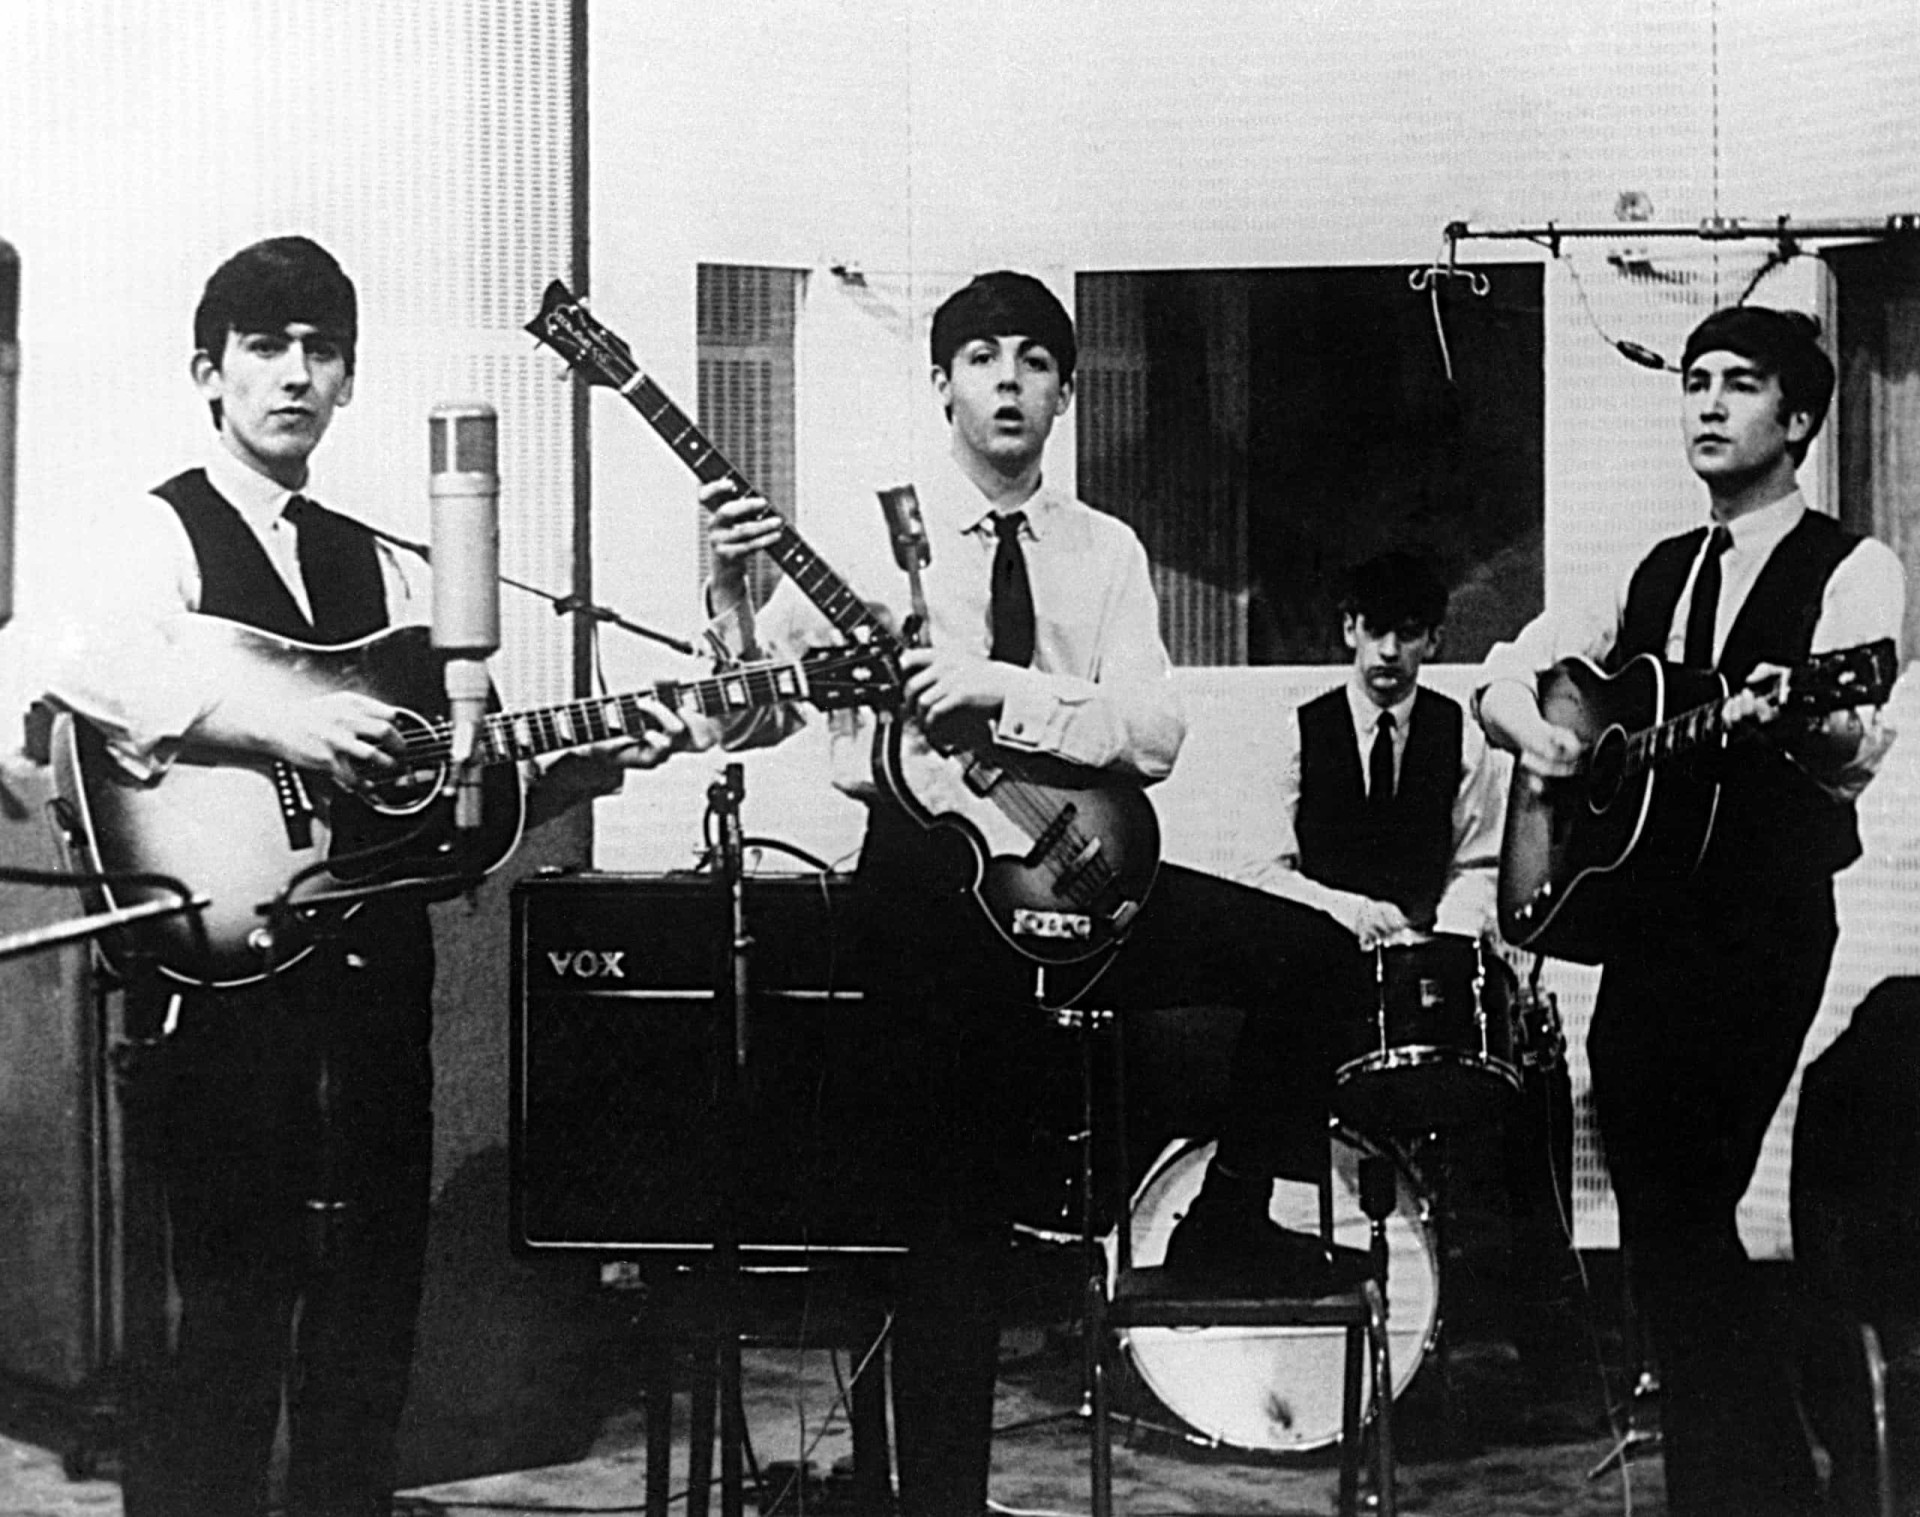 <p>Après avoir fait un concert à Hamburg, les Beatles ont signé un contrat et ont pu sortir leur premier titre, "Love Me Do", en octobre 1962. Ils ont ensuite sorti leur premier album "Please Please Me" le 11 février 1963.</p><p><a href="https://www.msn.com/fr-ca/community/channel/vid-7xx8mnucu55yw63we9va2gwr7uihbxwc68fxqp25x6tg4ftibpra?cvid=94631541bc0f4f89bfd59158d696ad7e">Suivez-nous et accédez tous les jours à du contenu exclusif</a></p>